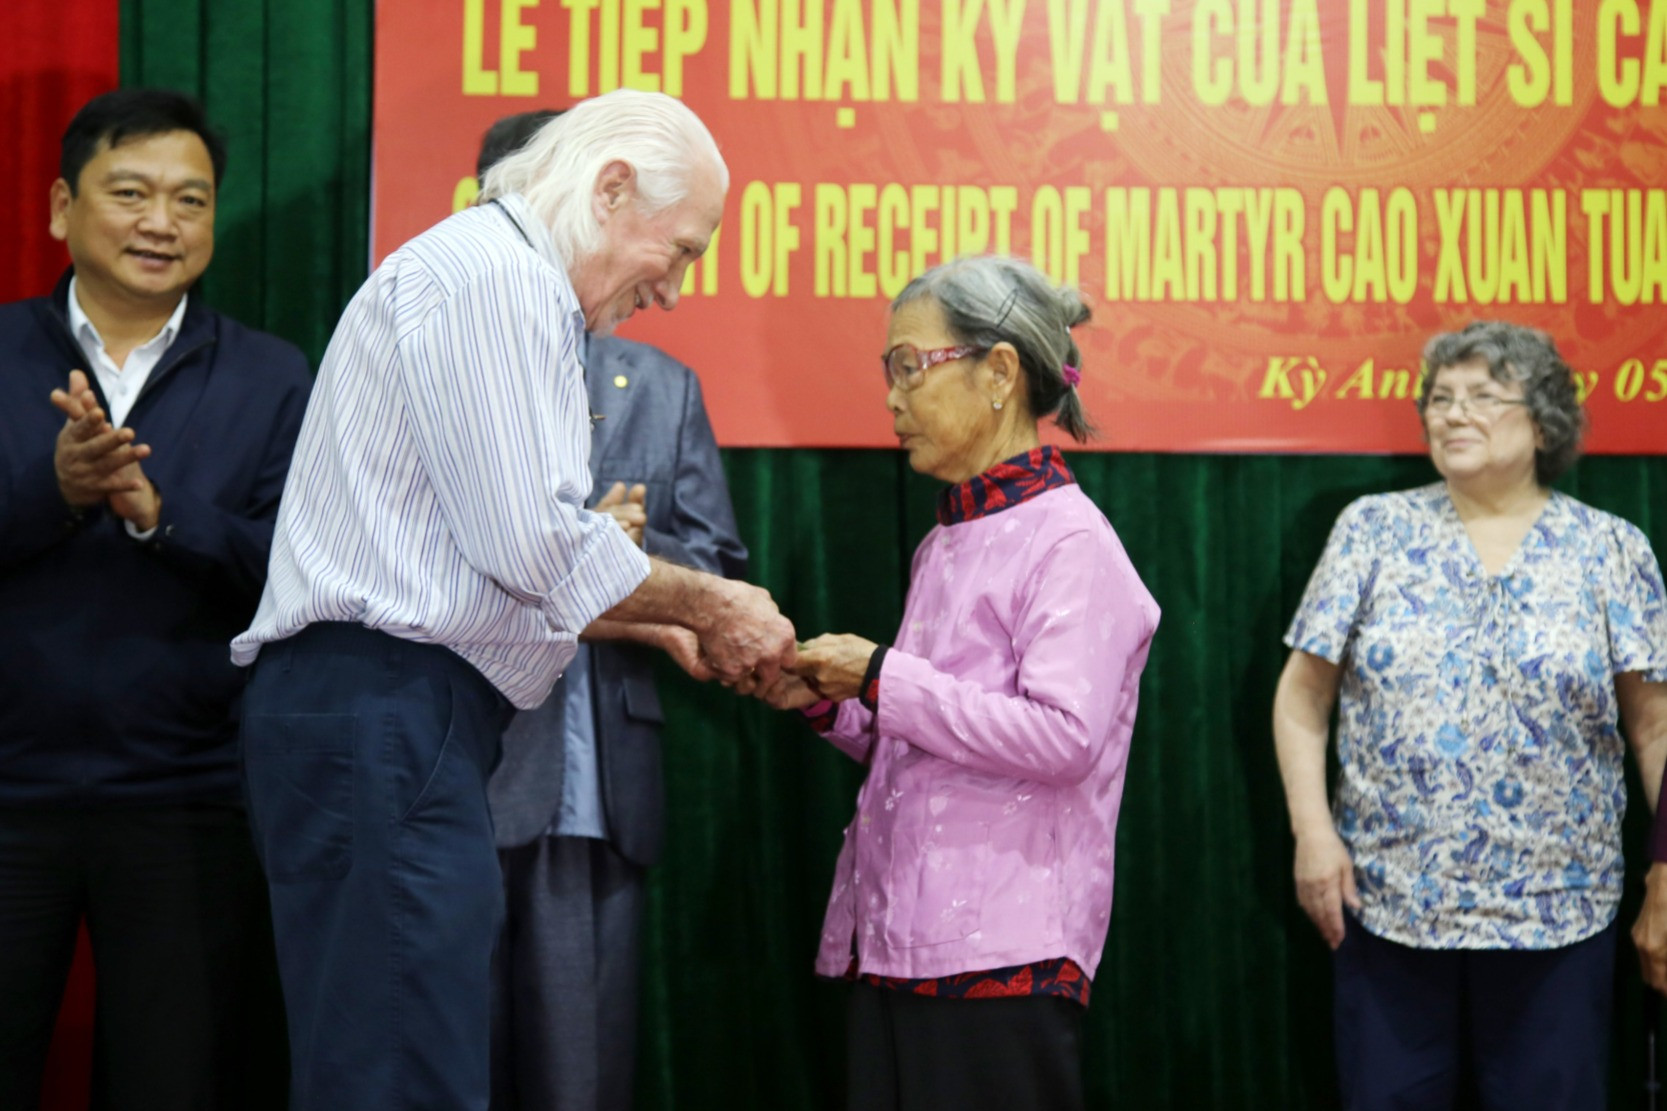 Cựu binh Mỹ trao trả nhật ký cho gia đình liệt sĩ ở Hà Tĩnh